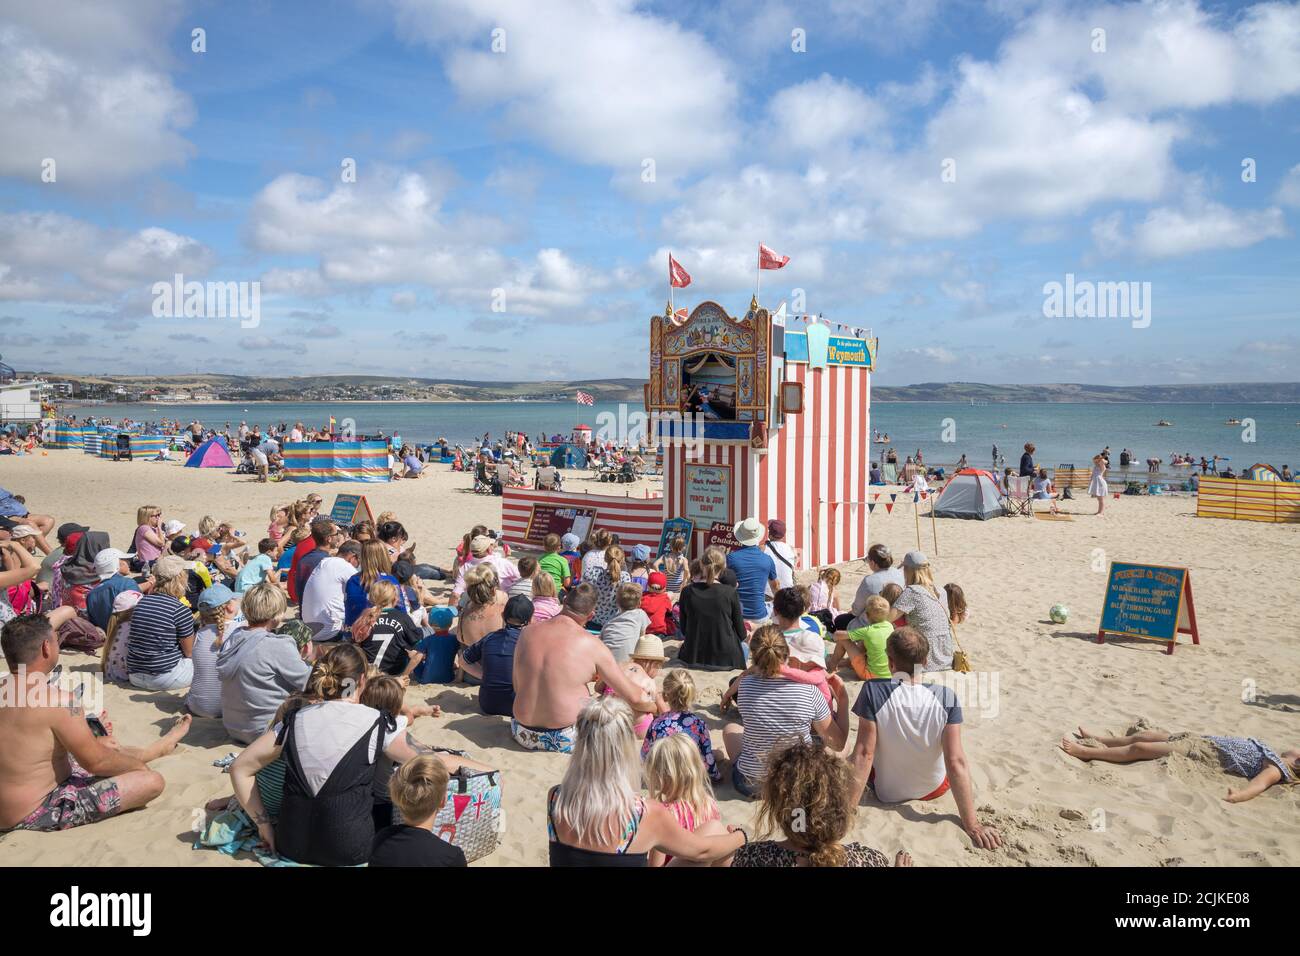 Vacanciers sur la plage avec Punch & Judy, Weymouth, Jurassic Coast, Dorset, Angleterre, Royaume-Uni Banque D'Images